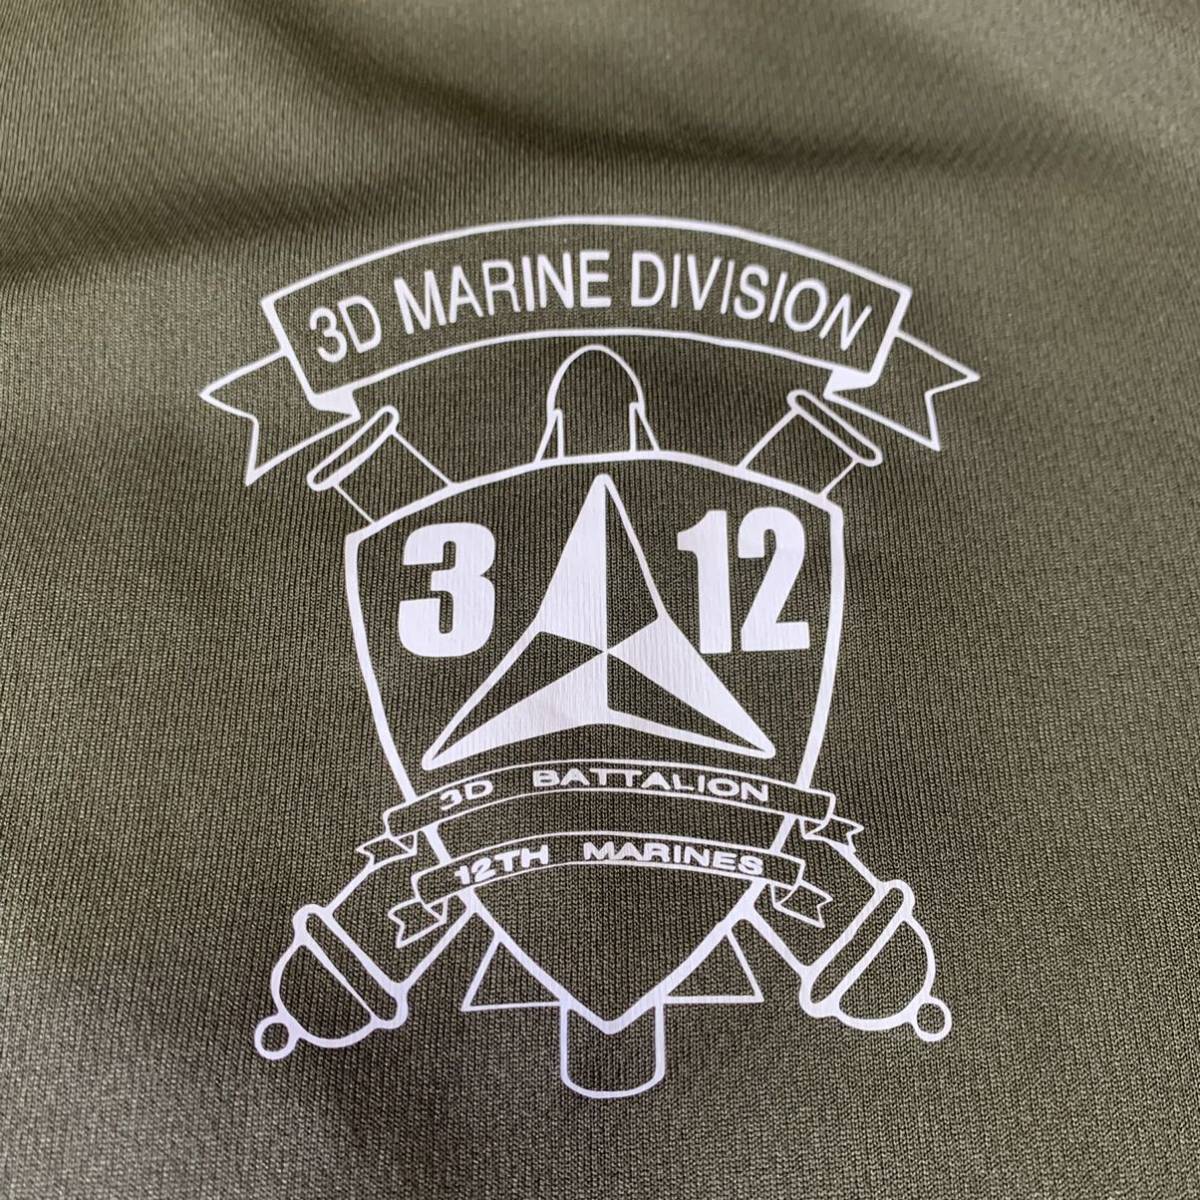  Okinawa вооруженные силы США сброшенный товар USMC MARINE милитари короткий рукав футболка тренировка бег .tore спорт OD ( контрольный номер W49)